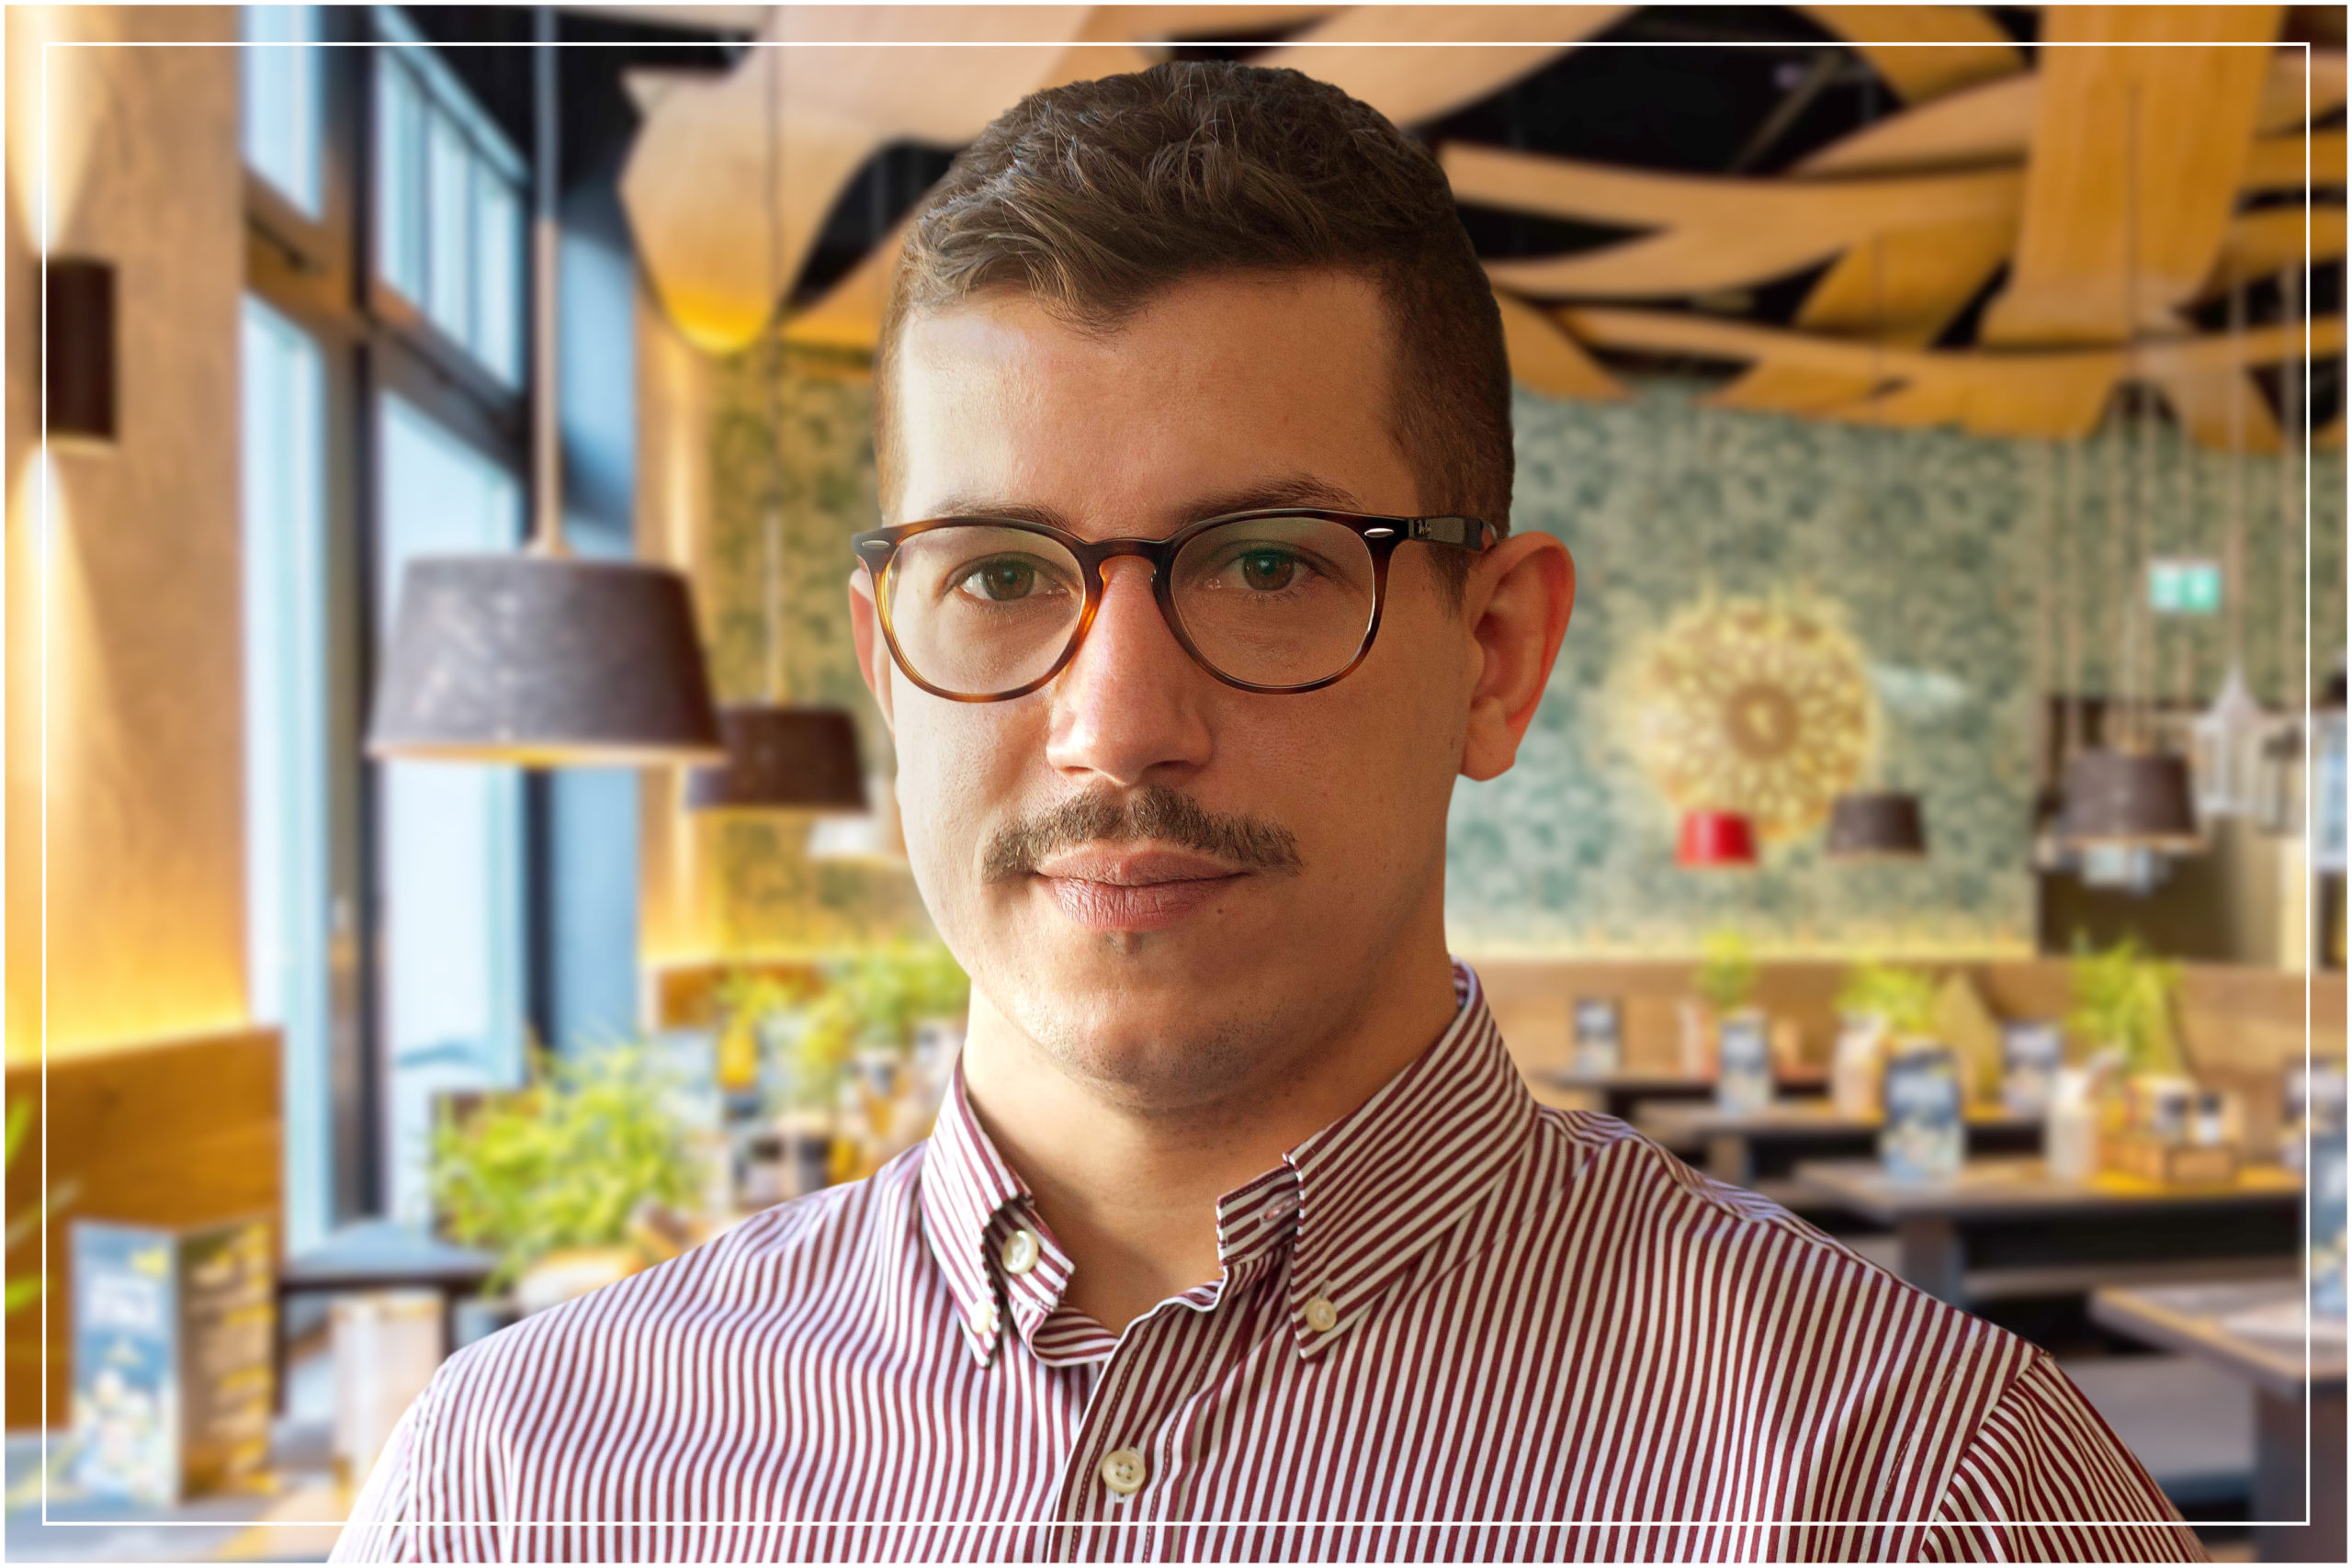 Mann mit Brille und karierten Hemd im Restaurant